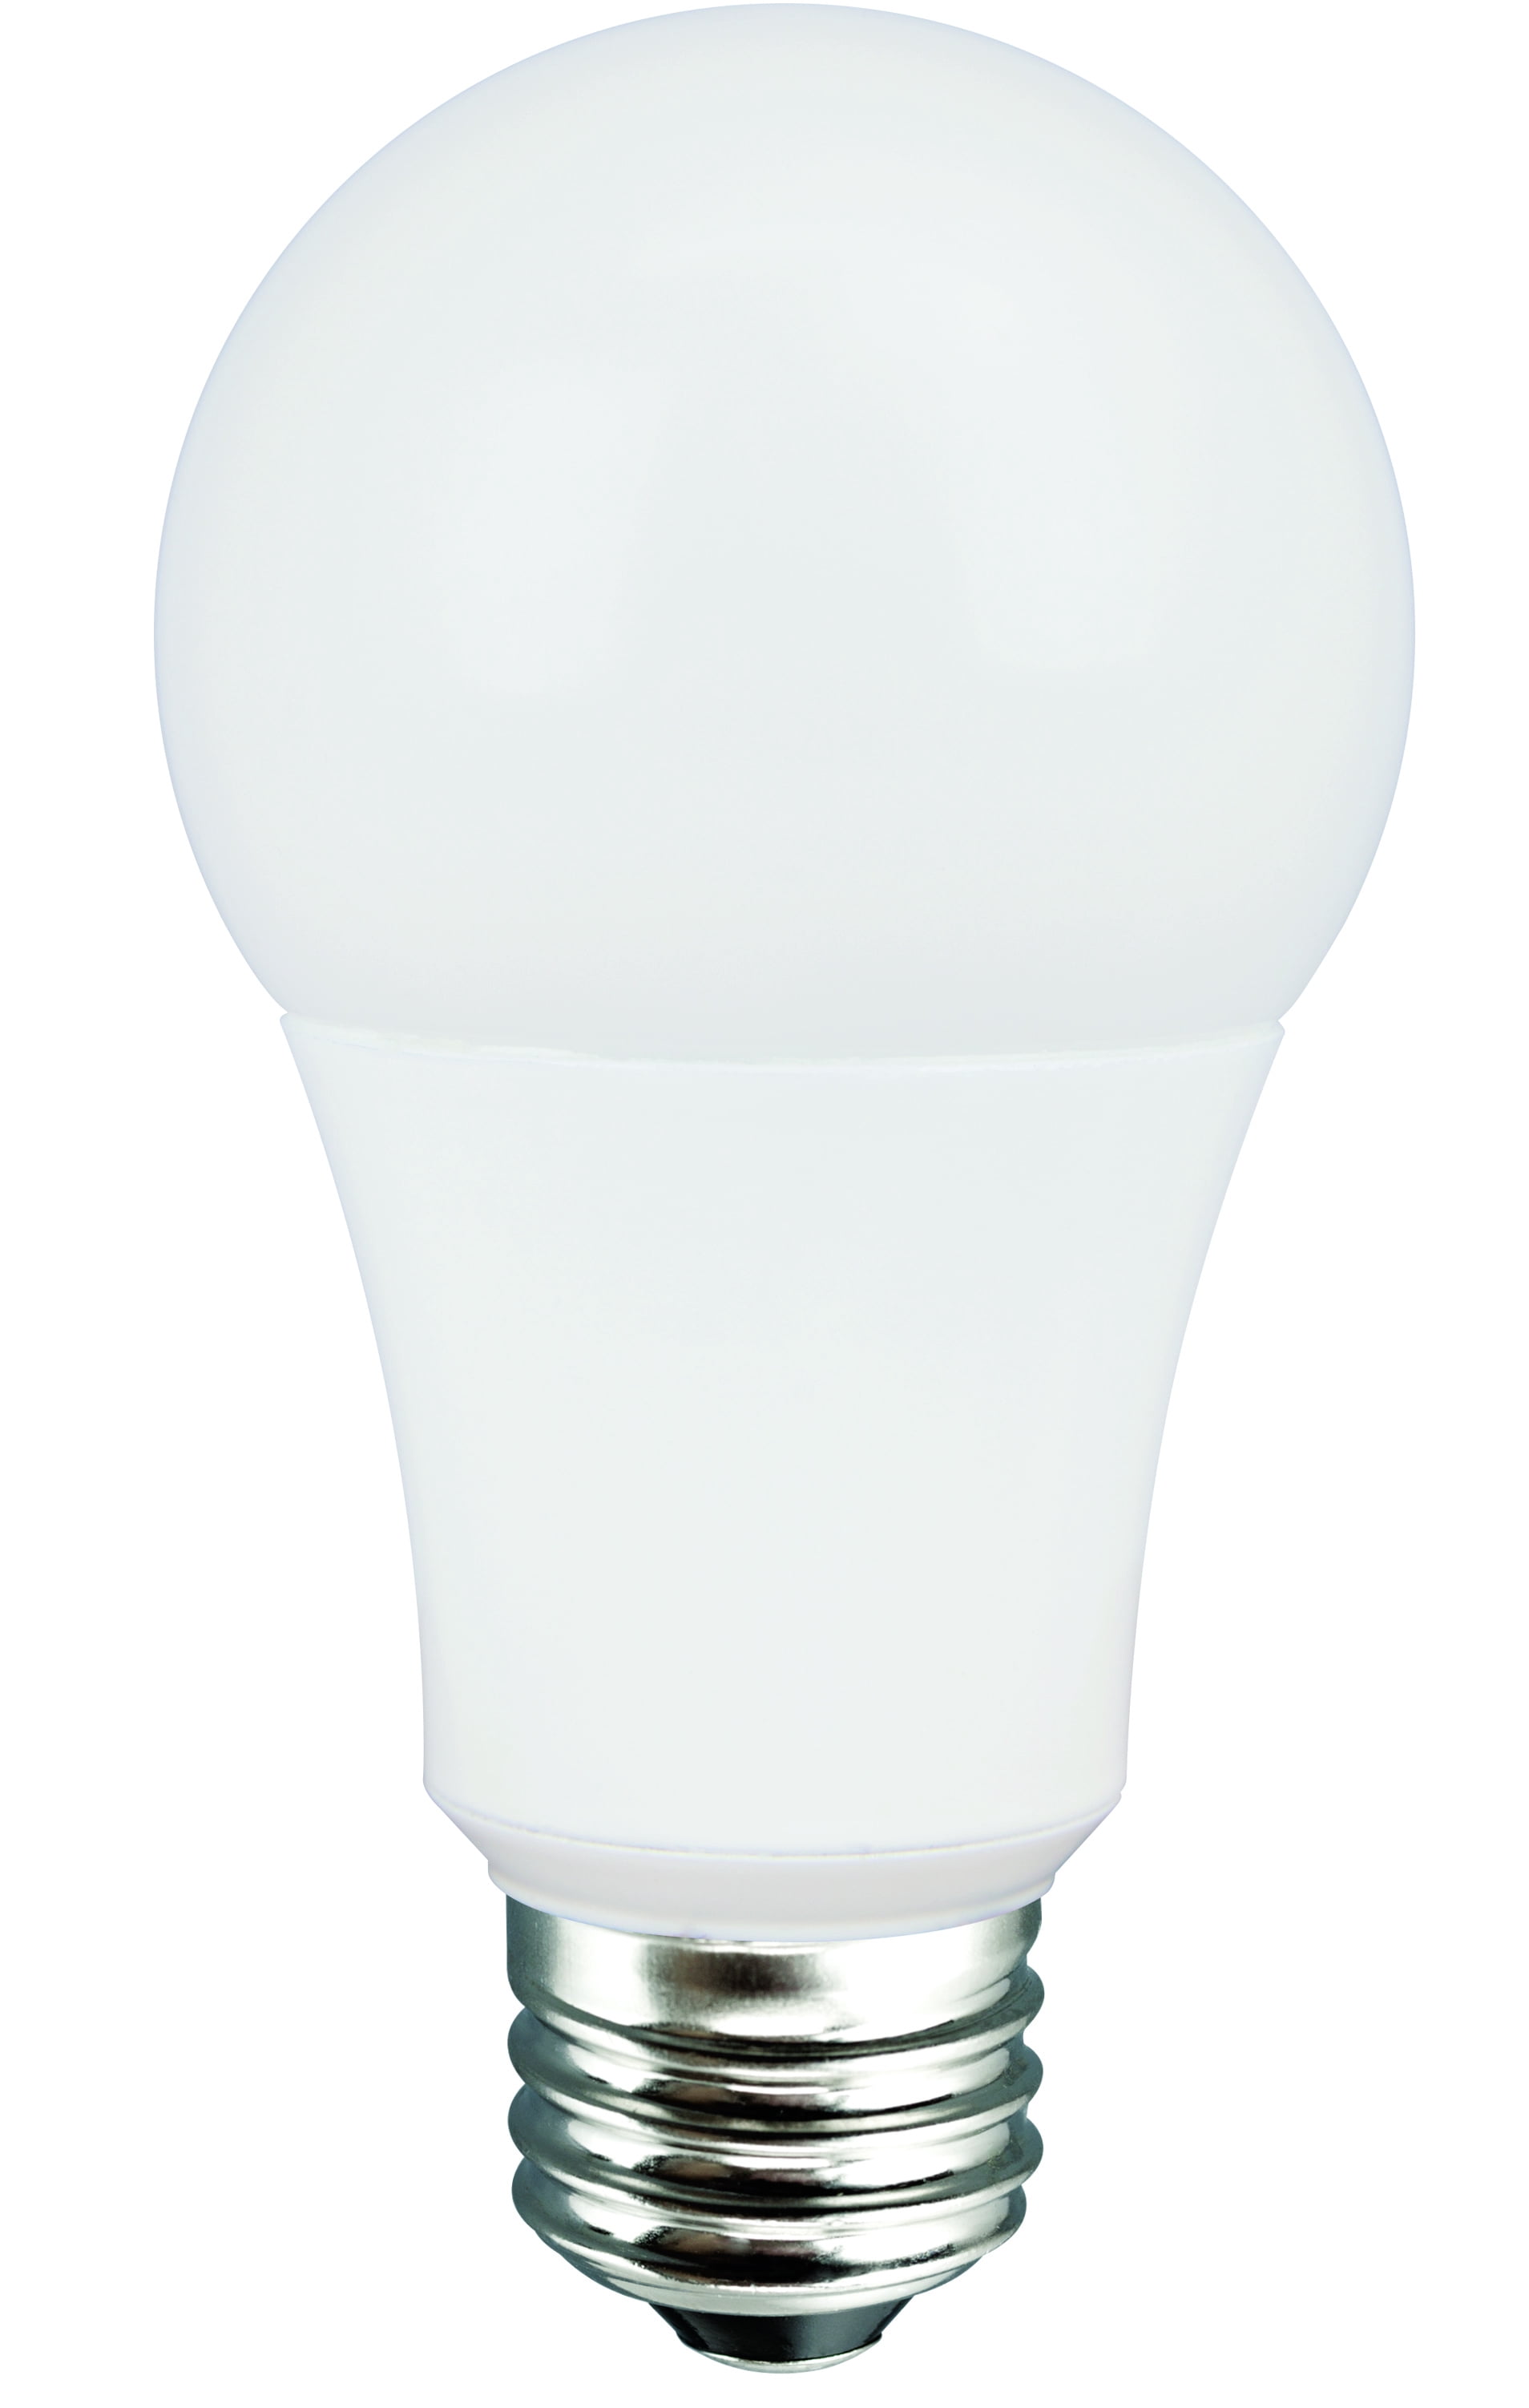 Value LED General Purpose (E26) Light Bulb, 11W (75W Equivalent), Soft White - Walmart.com